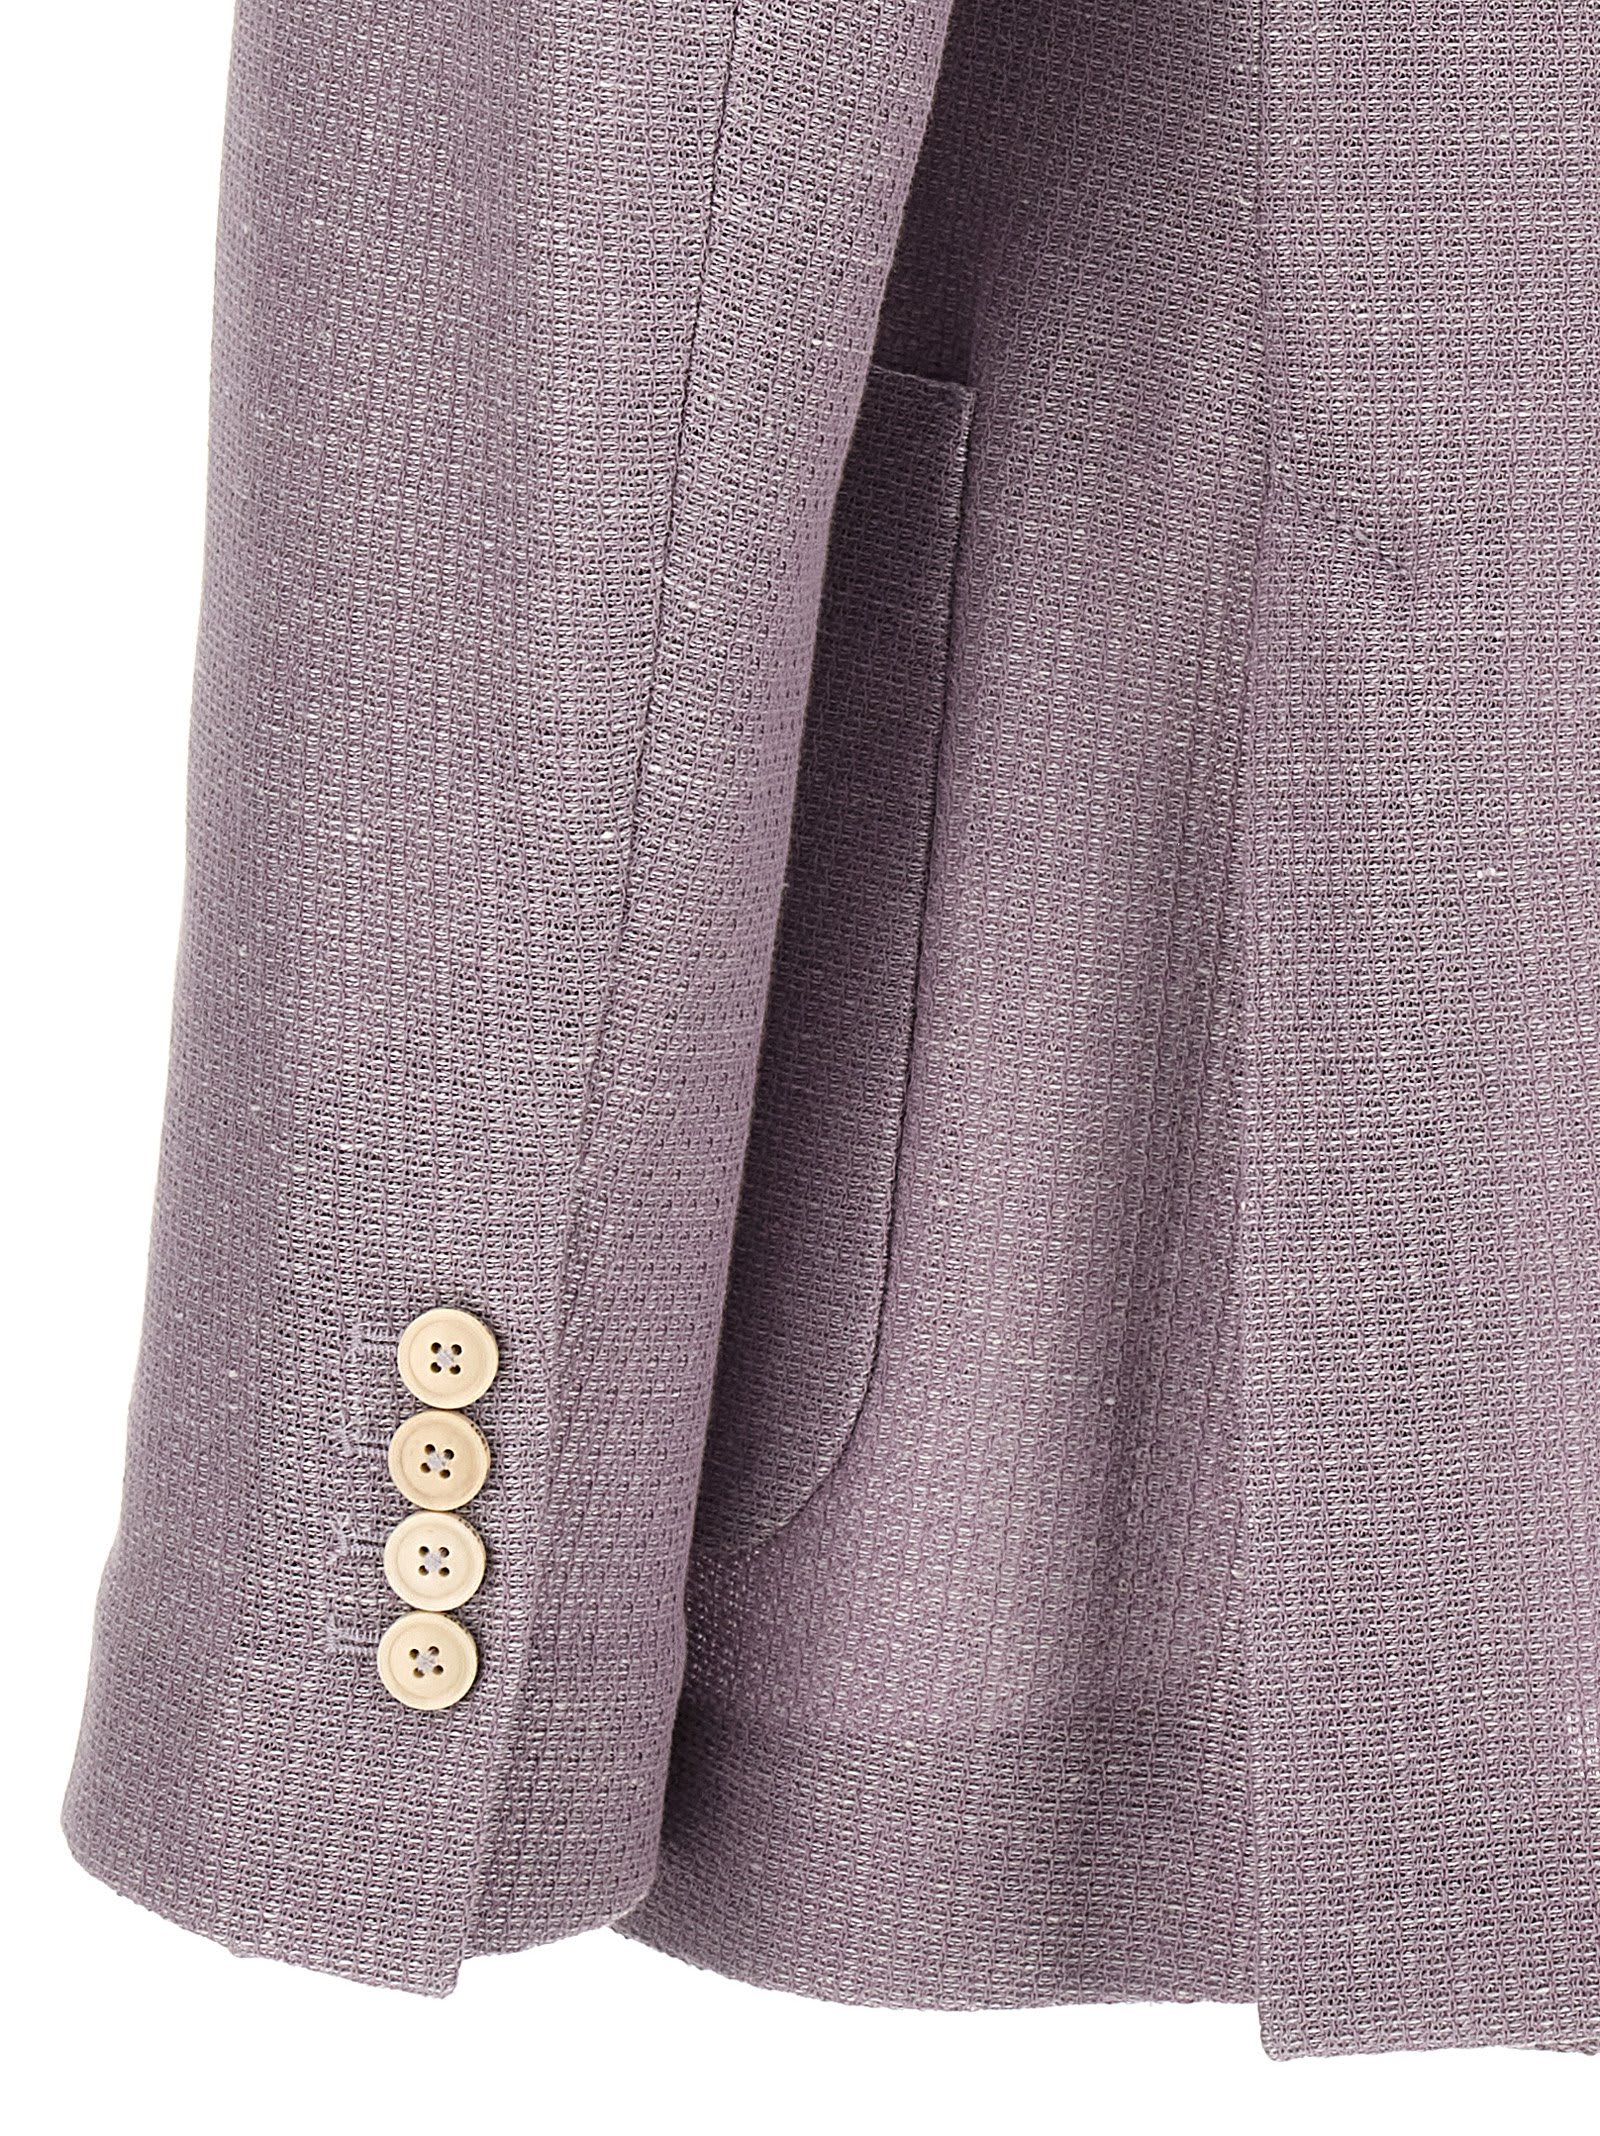 Shop Circolo 1901 Double-breasted Blazer In Purple